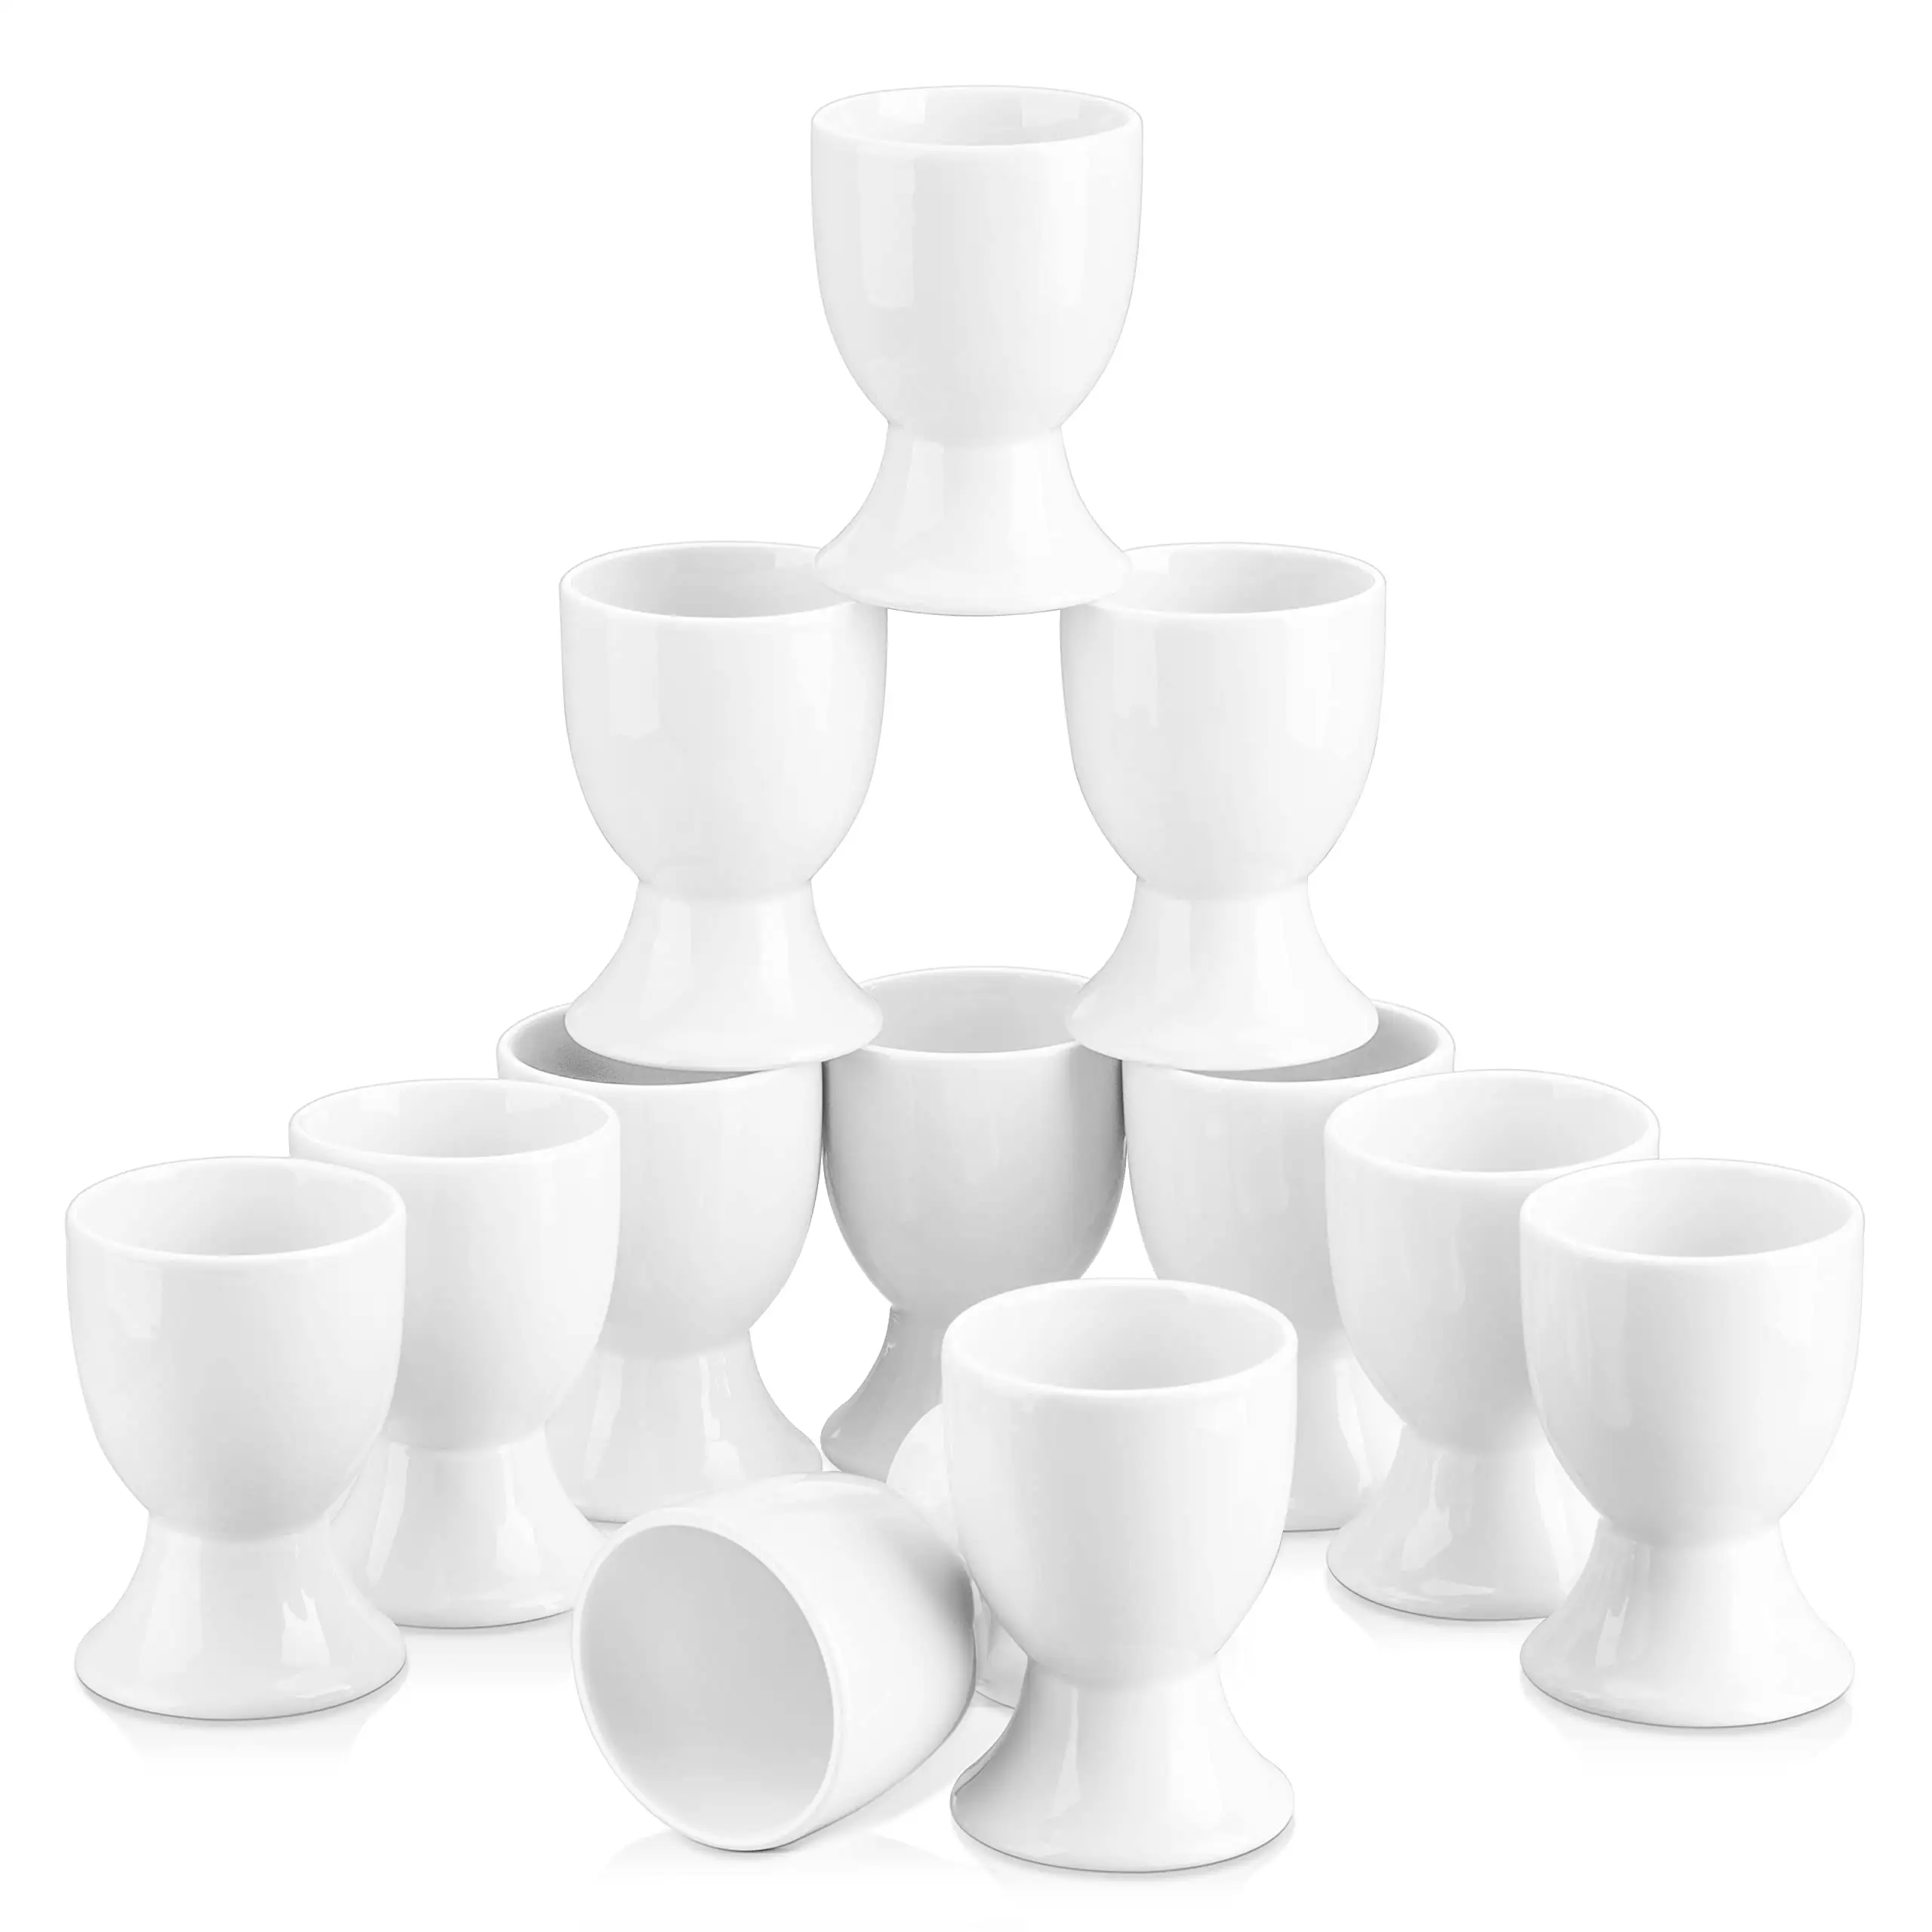 Ceramic Egg Cups Set of 6 Porcelain Egg Stand Holders for Soft Hard Boiled Eggs for Breakfast